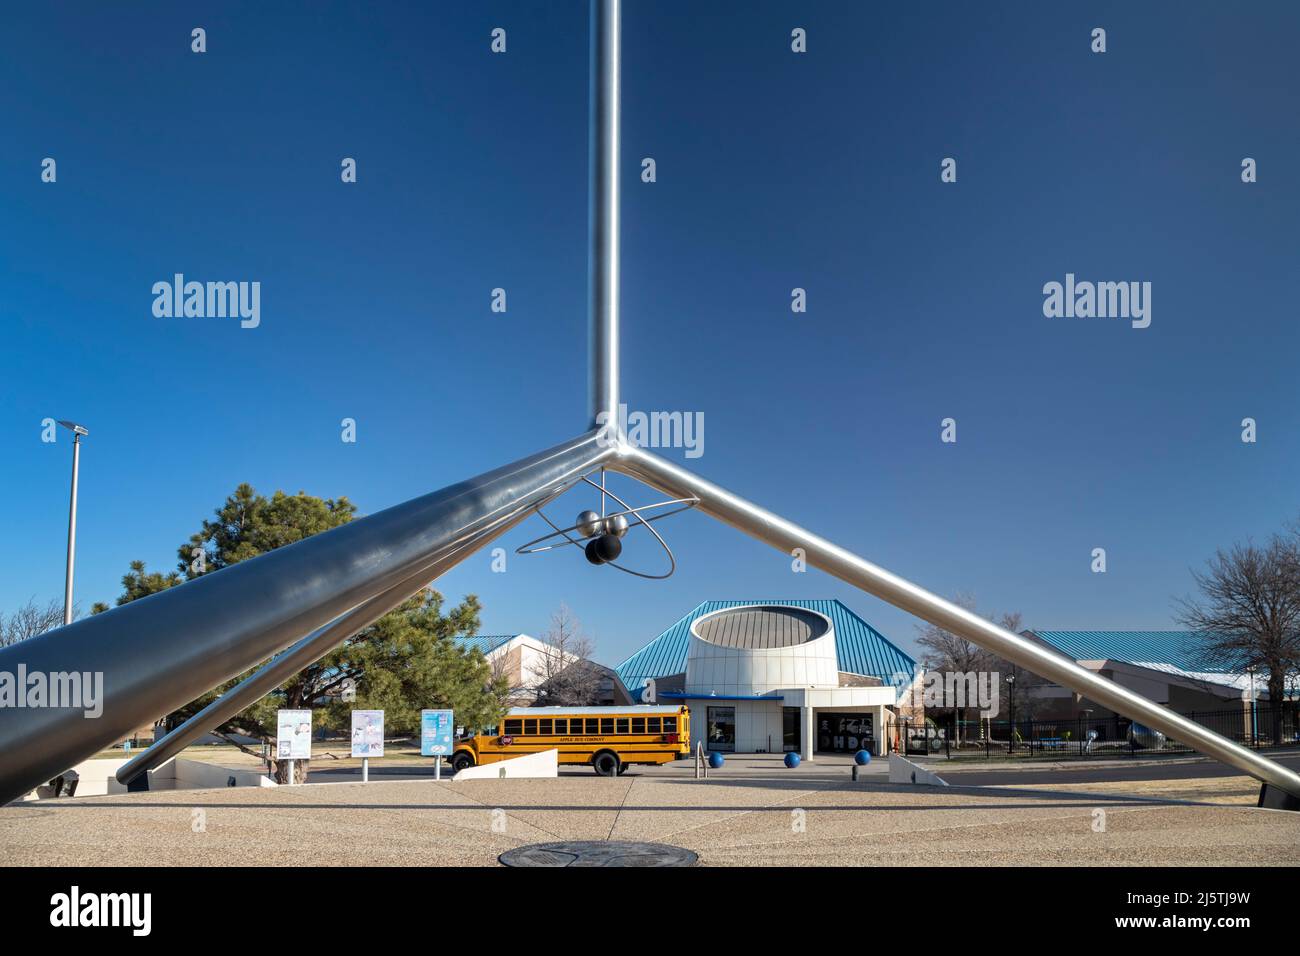 Amarillo, Texas - il monumento all'elio fuori dal Don Harrington Discovery Center. Amarillo è stato il centro di produzione mondiale di elio per la maggior parte di Foto Stock